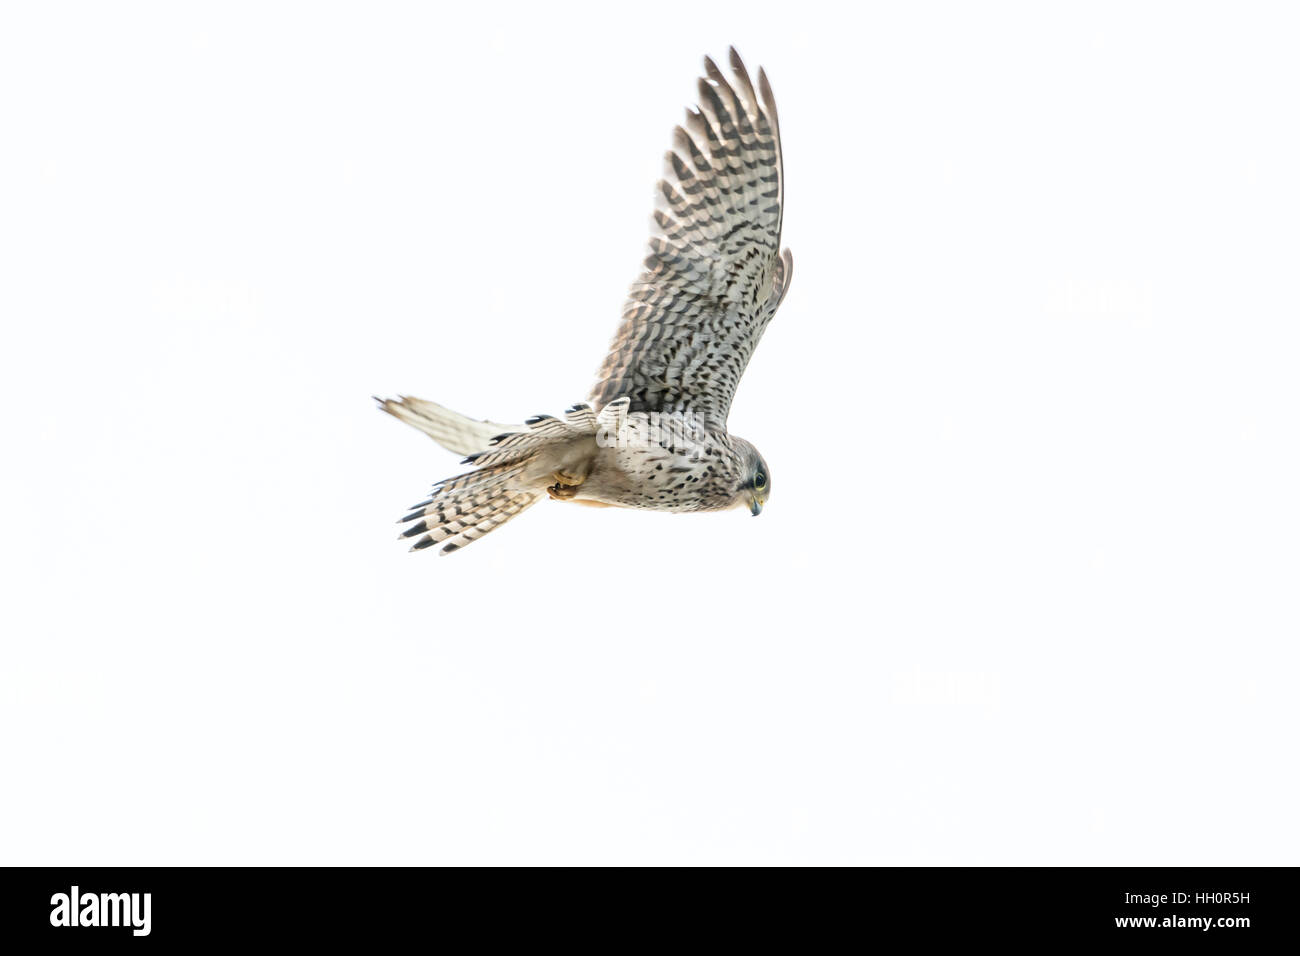 Les femelles de la crécerelle (Falco tinnunculus) en vol sur un fond blanc. Banque D'Images